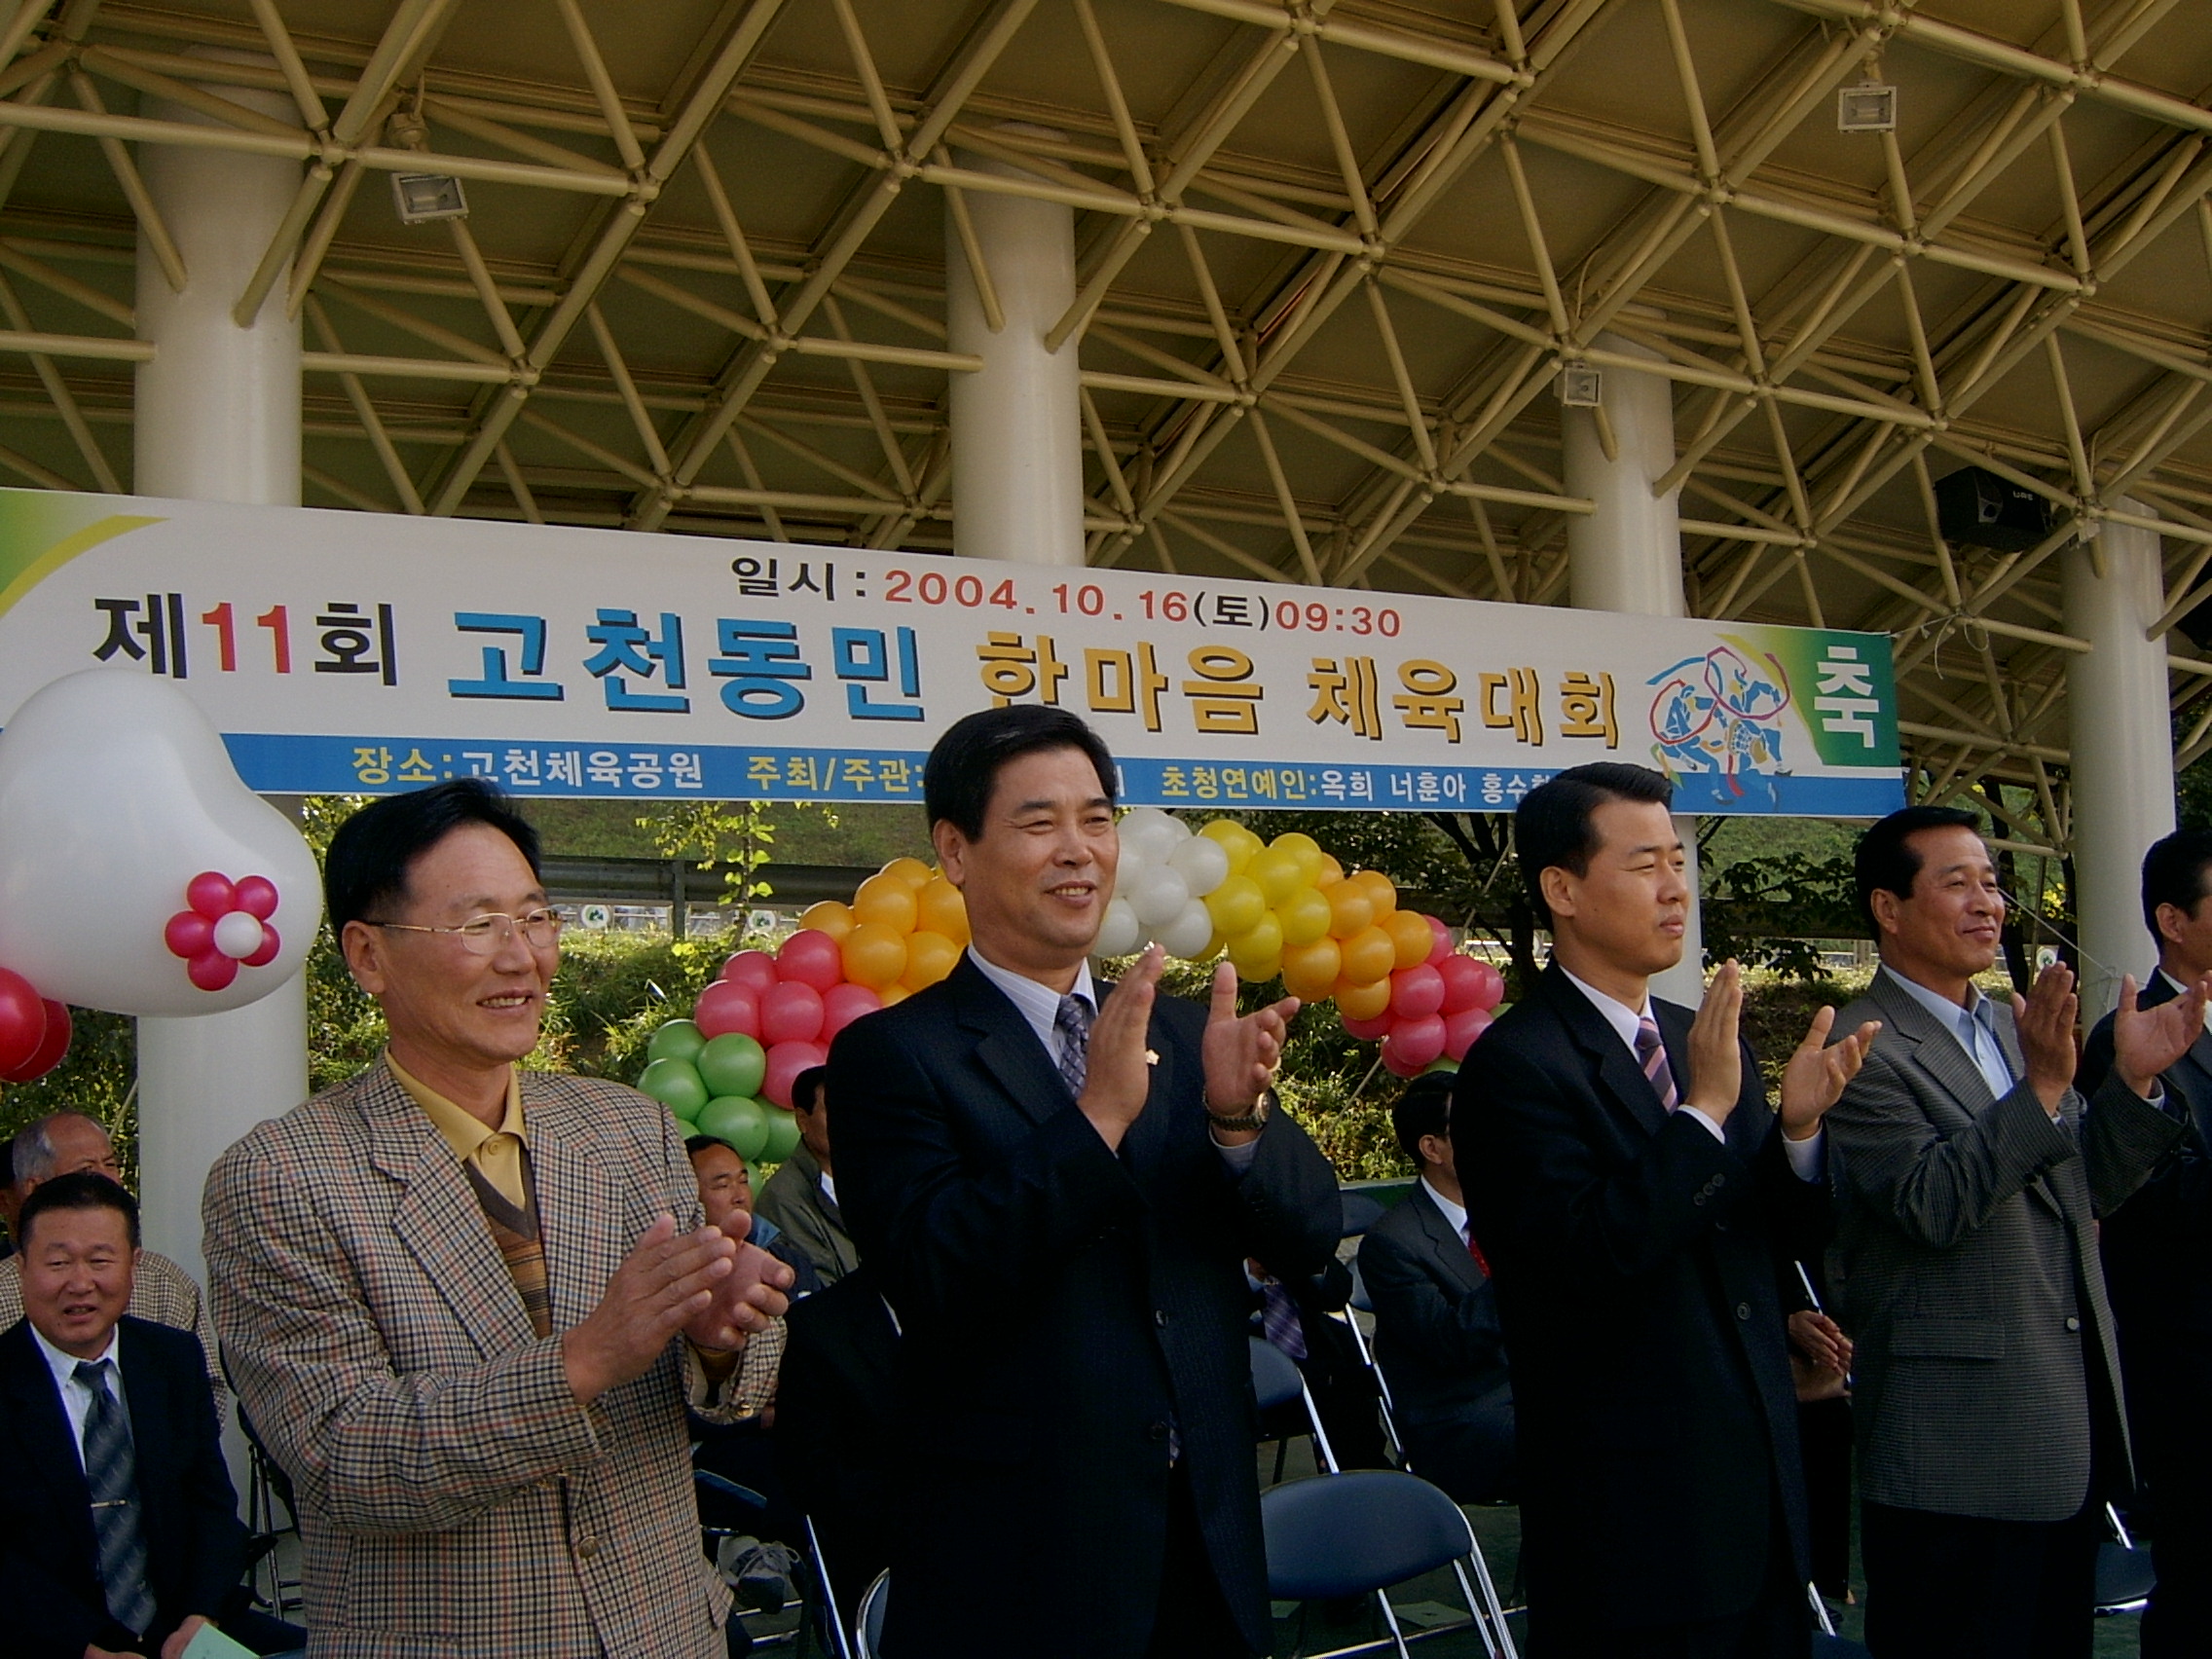  고천동민 한마음체육대회 참석하여  격려하고 있는 권오규 의장과 김상현 의원 ('04.10.16)